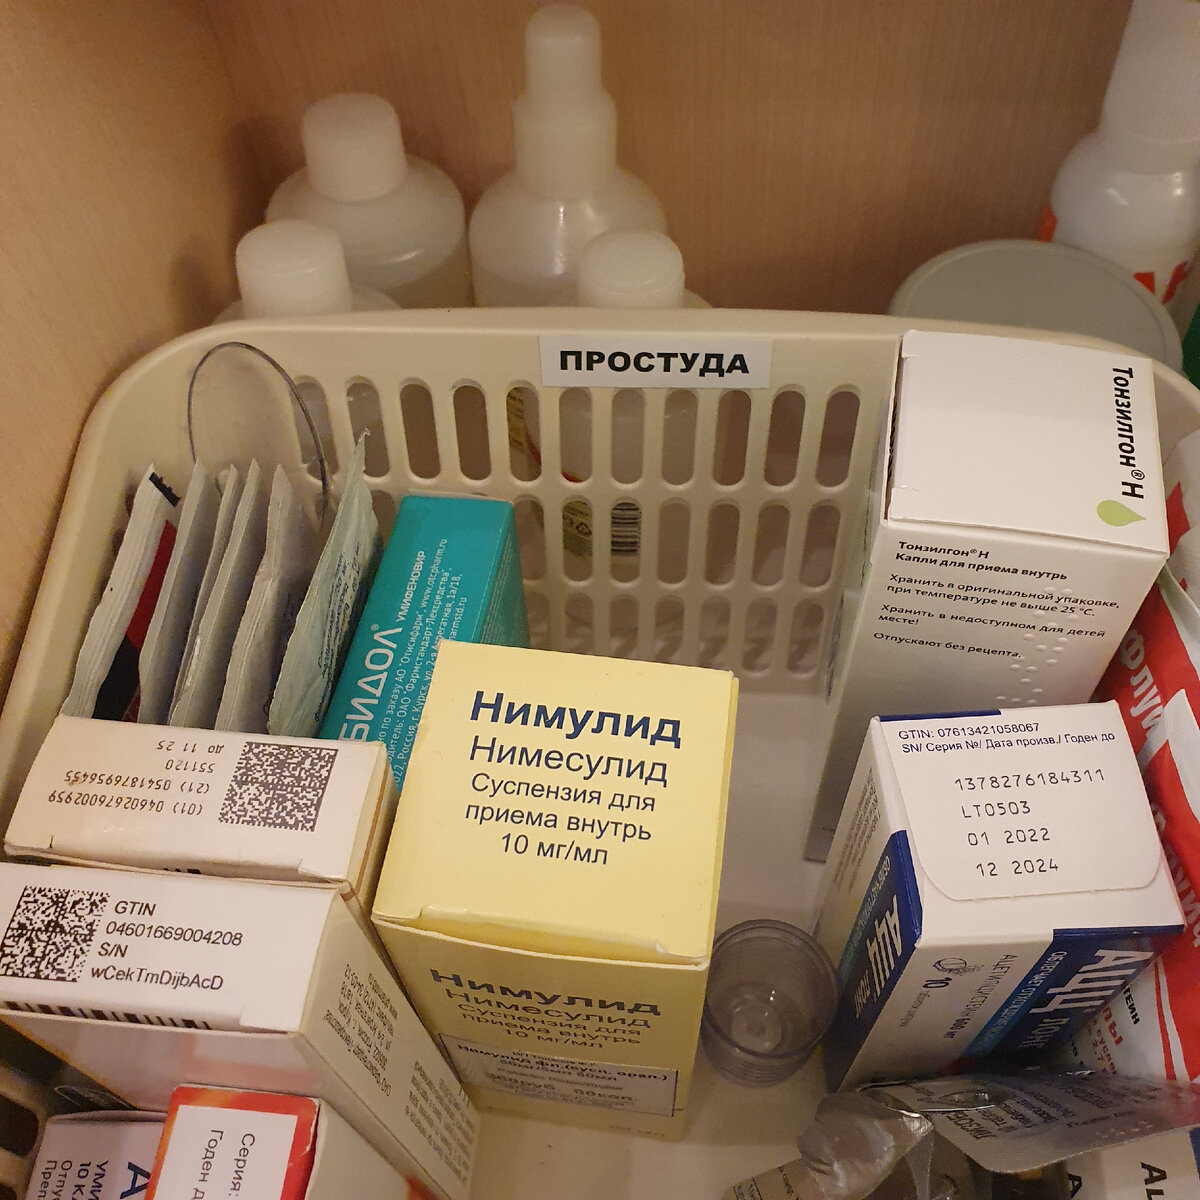 10 таблетниц, с которыми нужные лекарства всегда будут под рукой - Лайфхакер